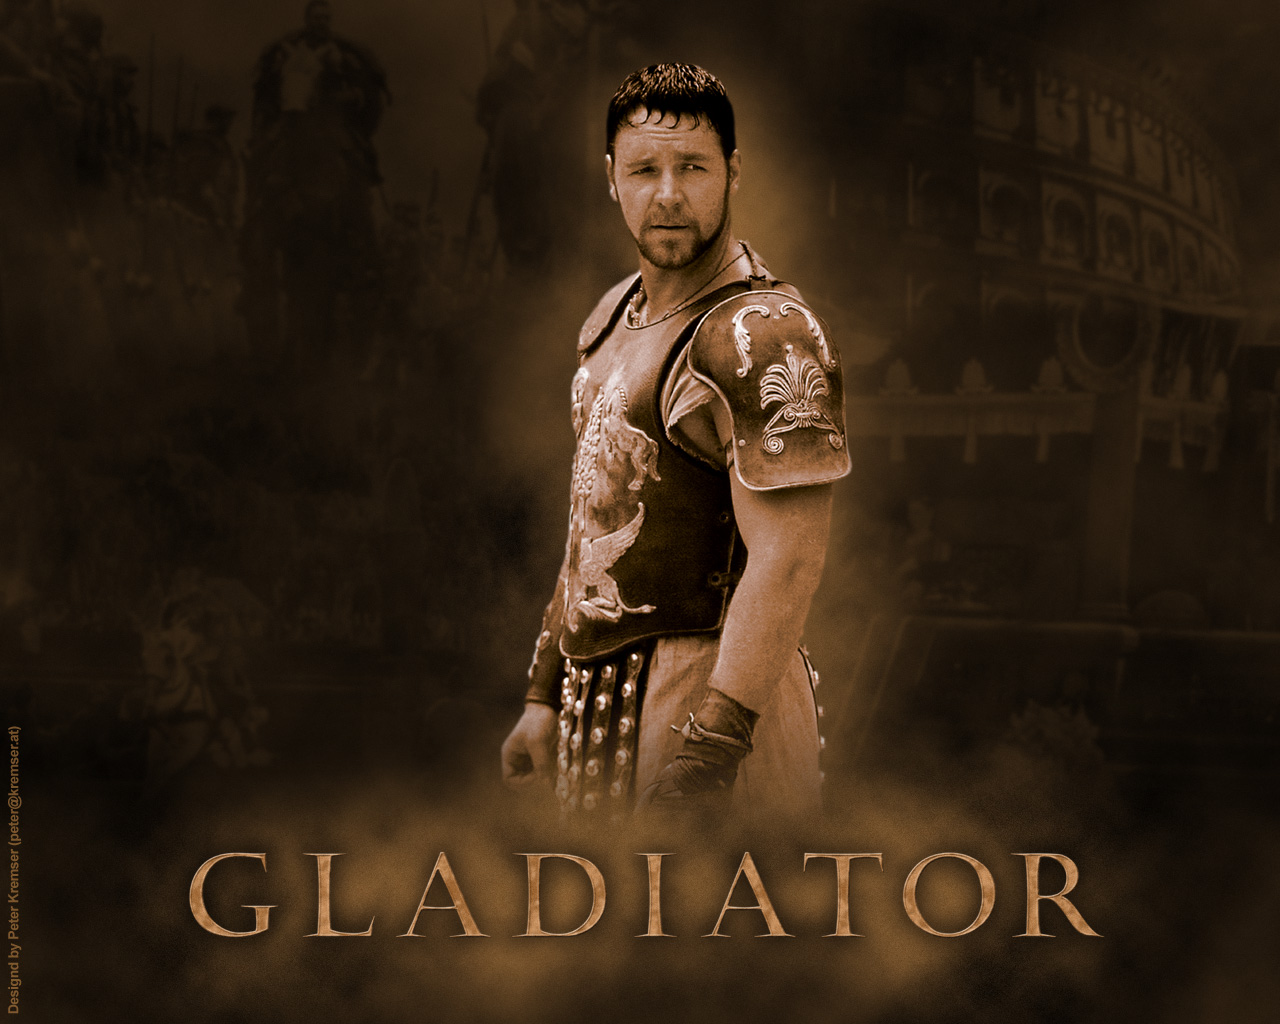 Maximus Gladiator Movie Quotes. QuotesGram